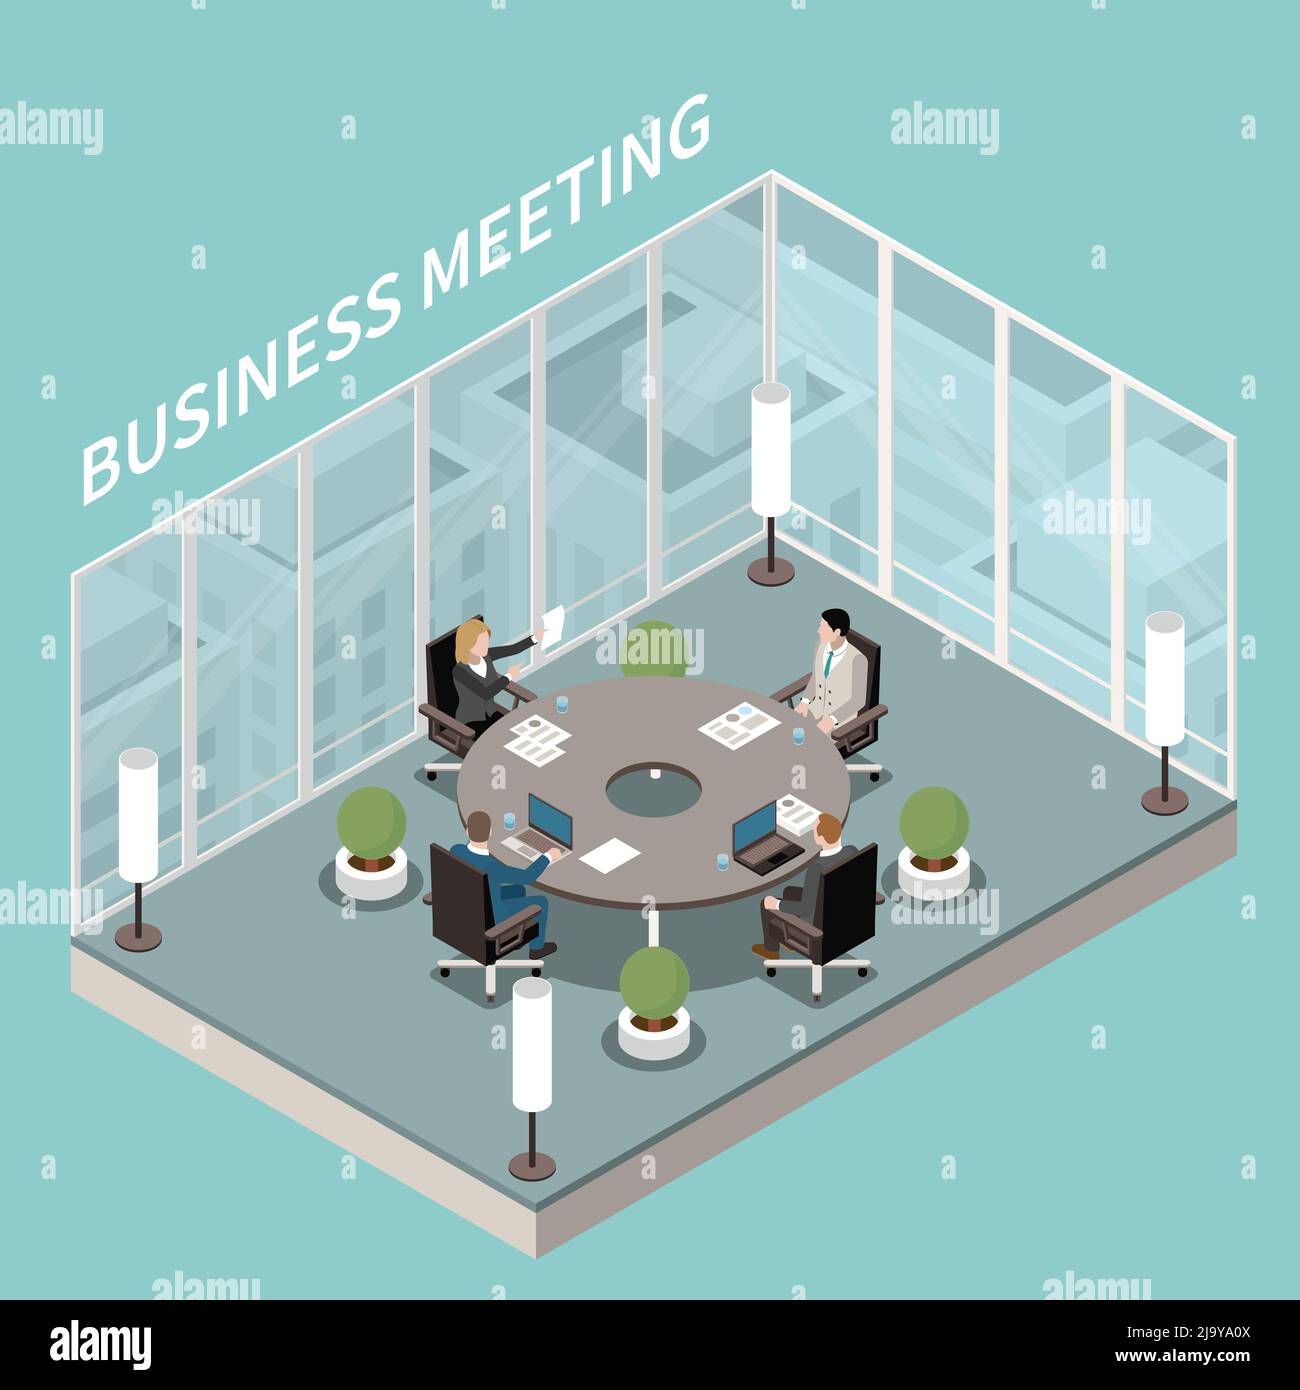 Bureau d'affaires de l'entreprise salle de réunion intérieur composition isométrique avec table de réunion ronde discussion murs en verre illustration vectorielle Illustration de Vecteur